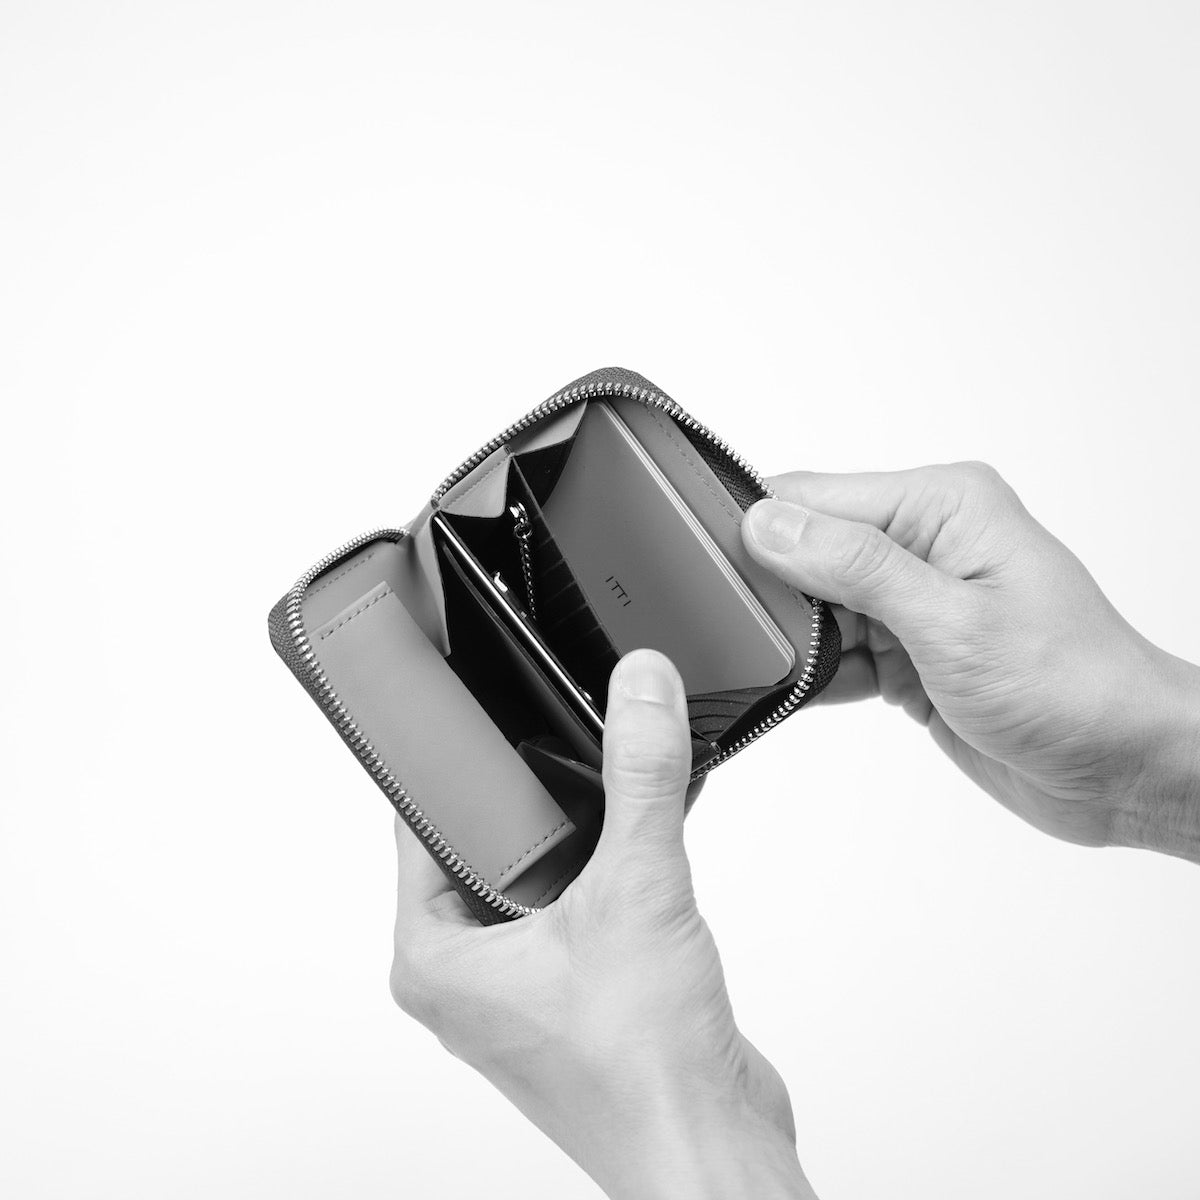 ITTI (イッチ) | CRISTY COIN CARD WLT / BRIDLE CROCO(クリスティコインカードウォレット/ブライドルクロコダイルレザー)さいふ 財布 サイフ エキゾチック ミニ キャッシュレス 黒 ブラック